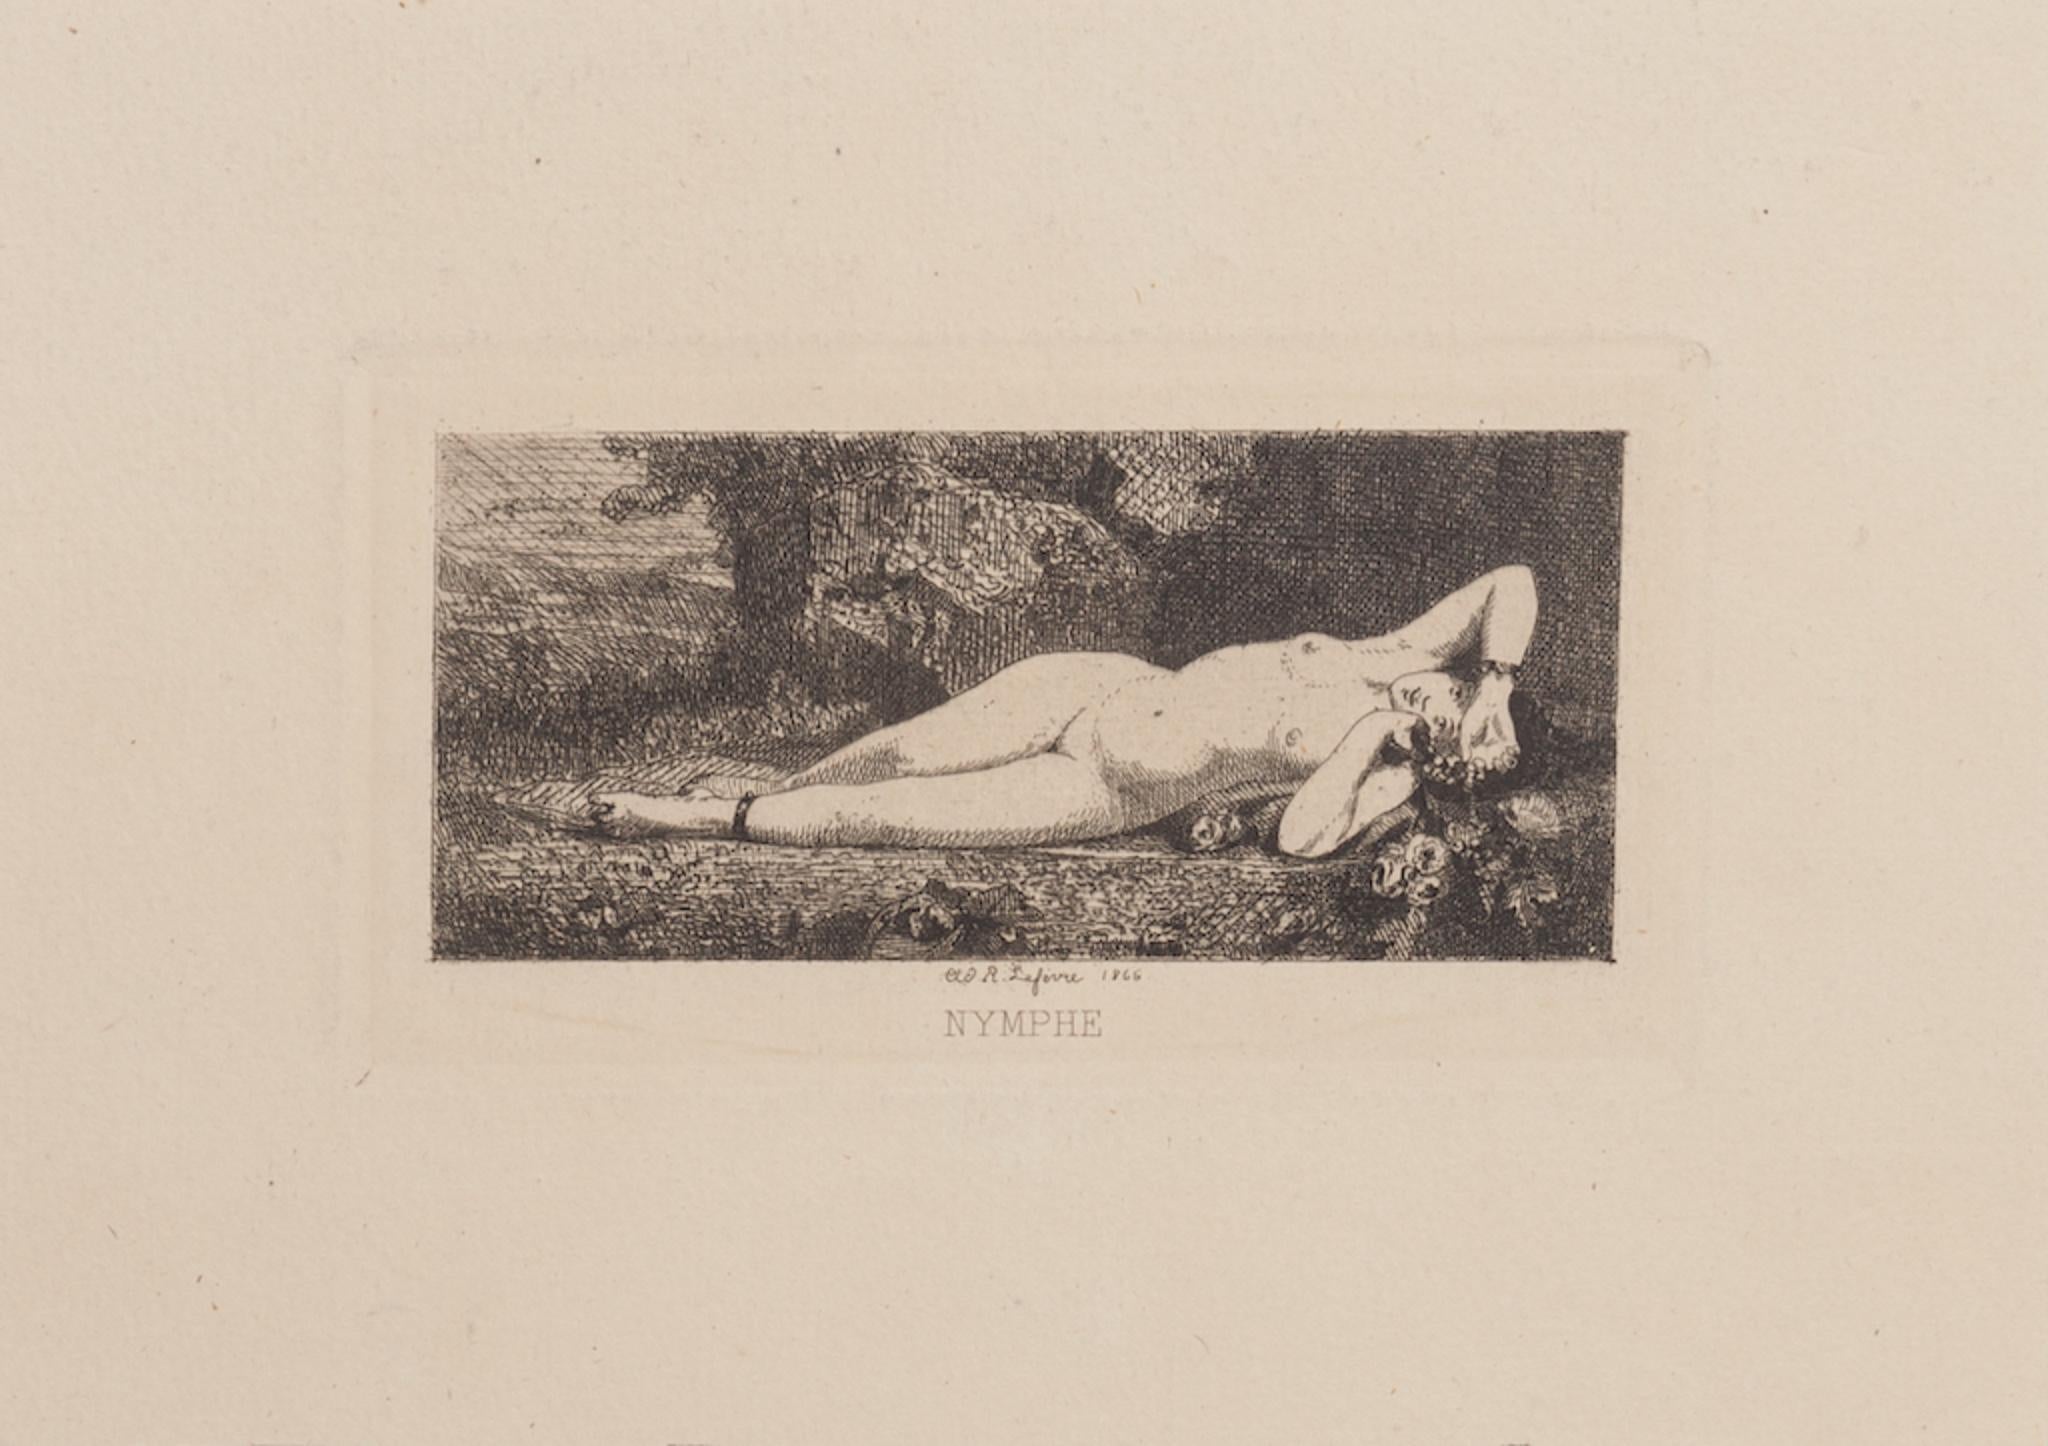 Robert Lefevre Nude Print - Sleeping Nymph - Original Etching after R. Lefevre - 1866